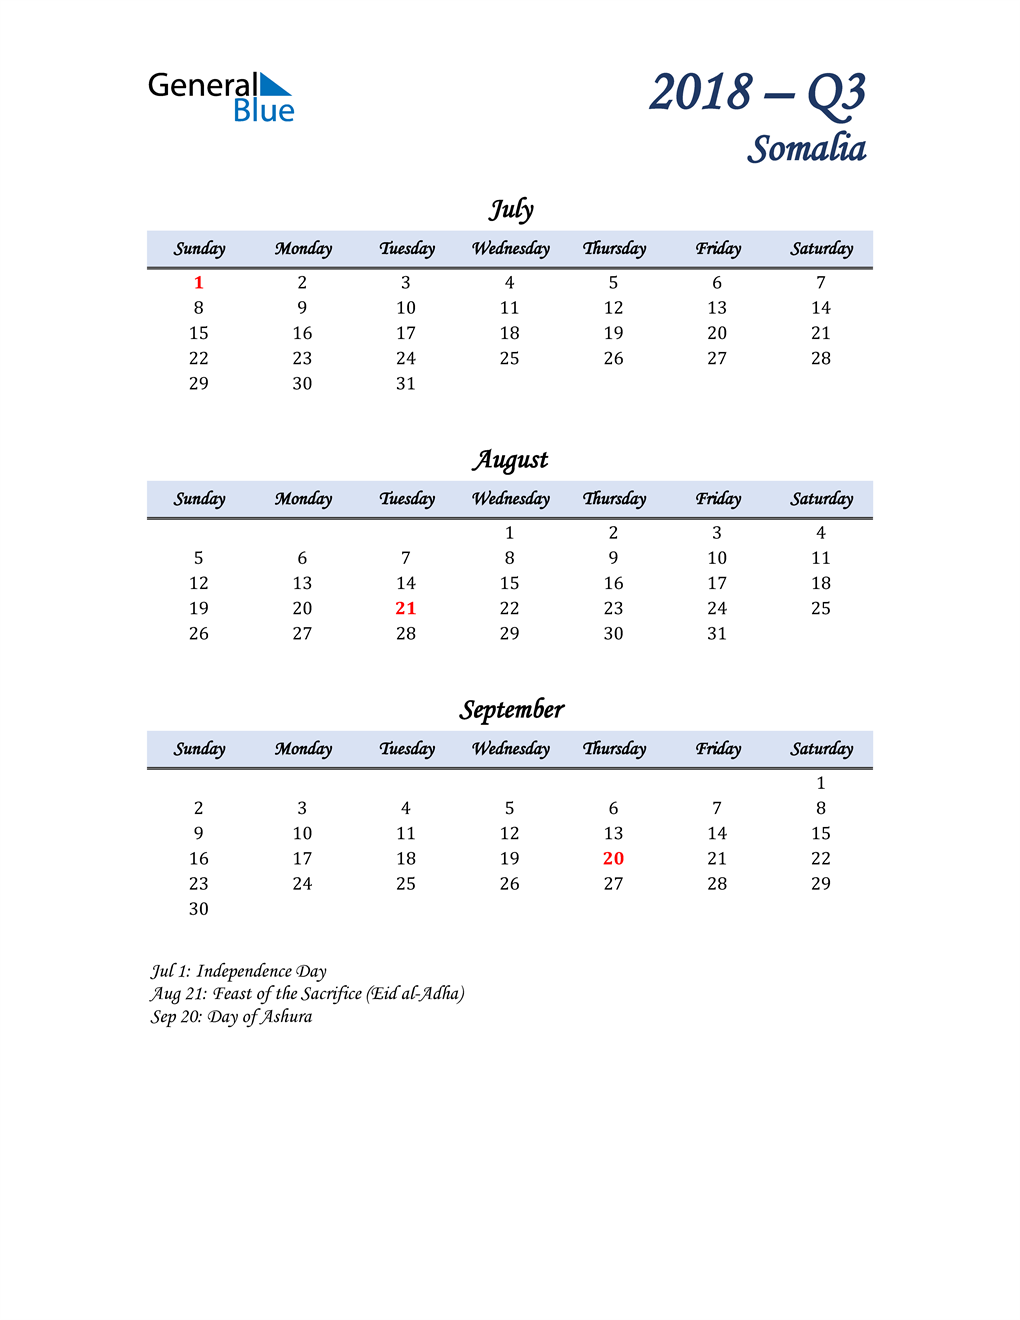  July, August, and September Calendar for Somalia